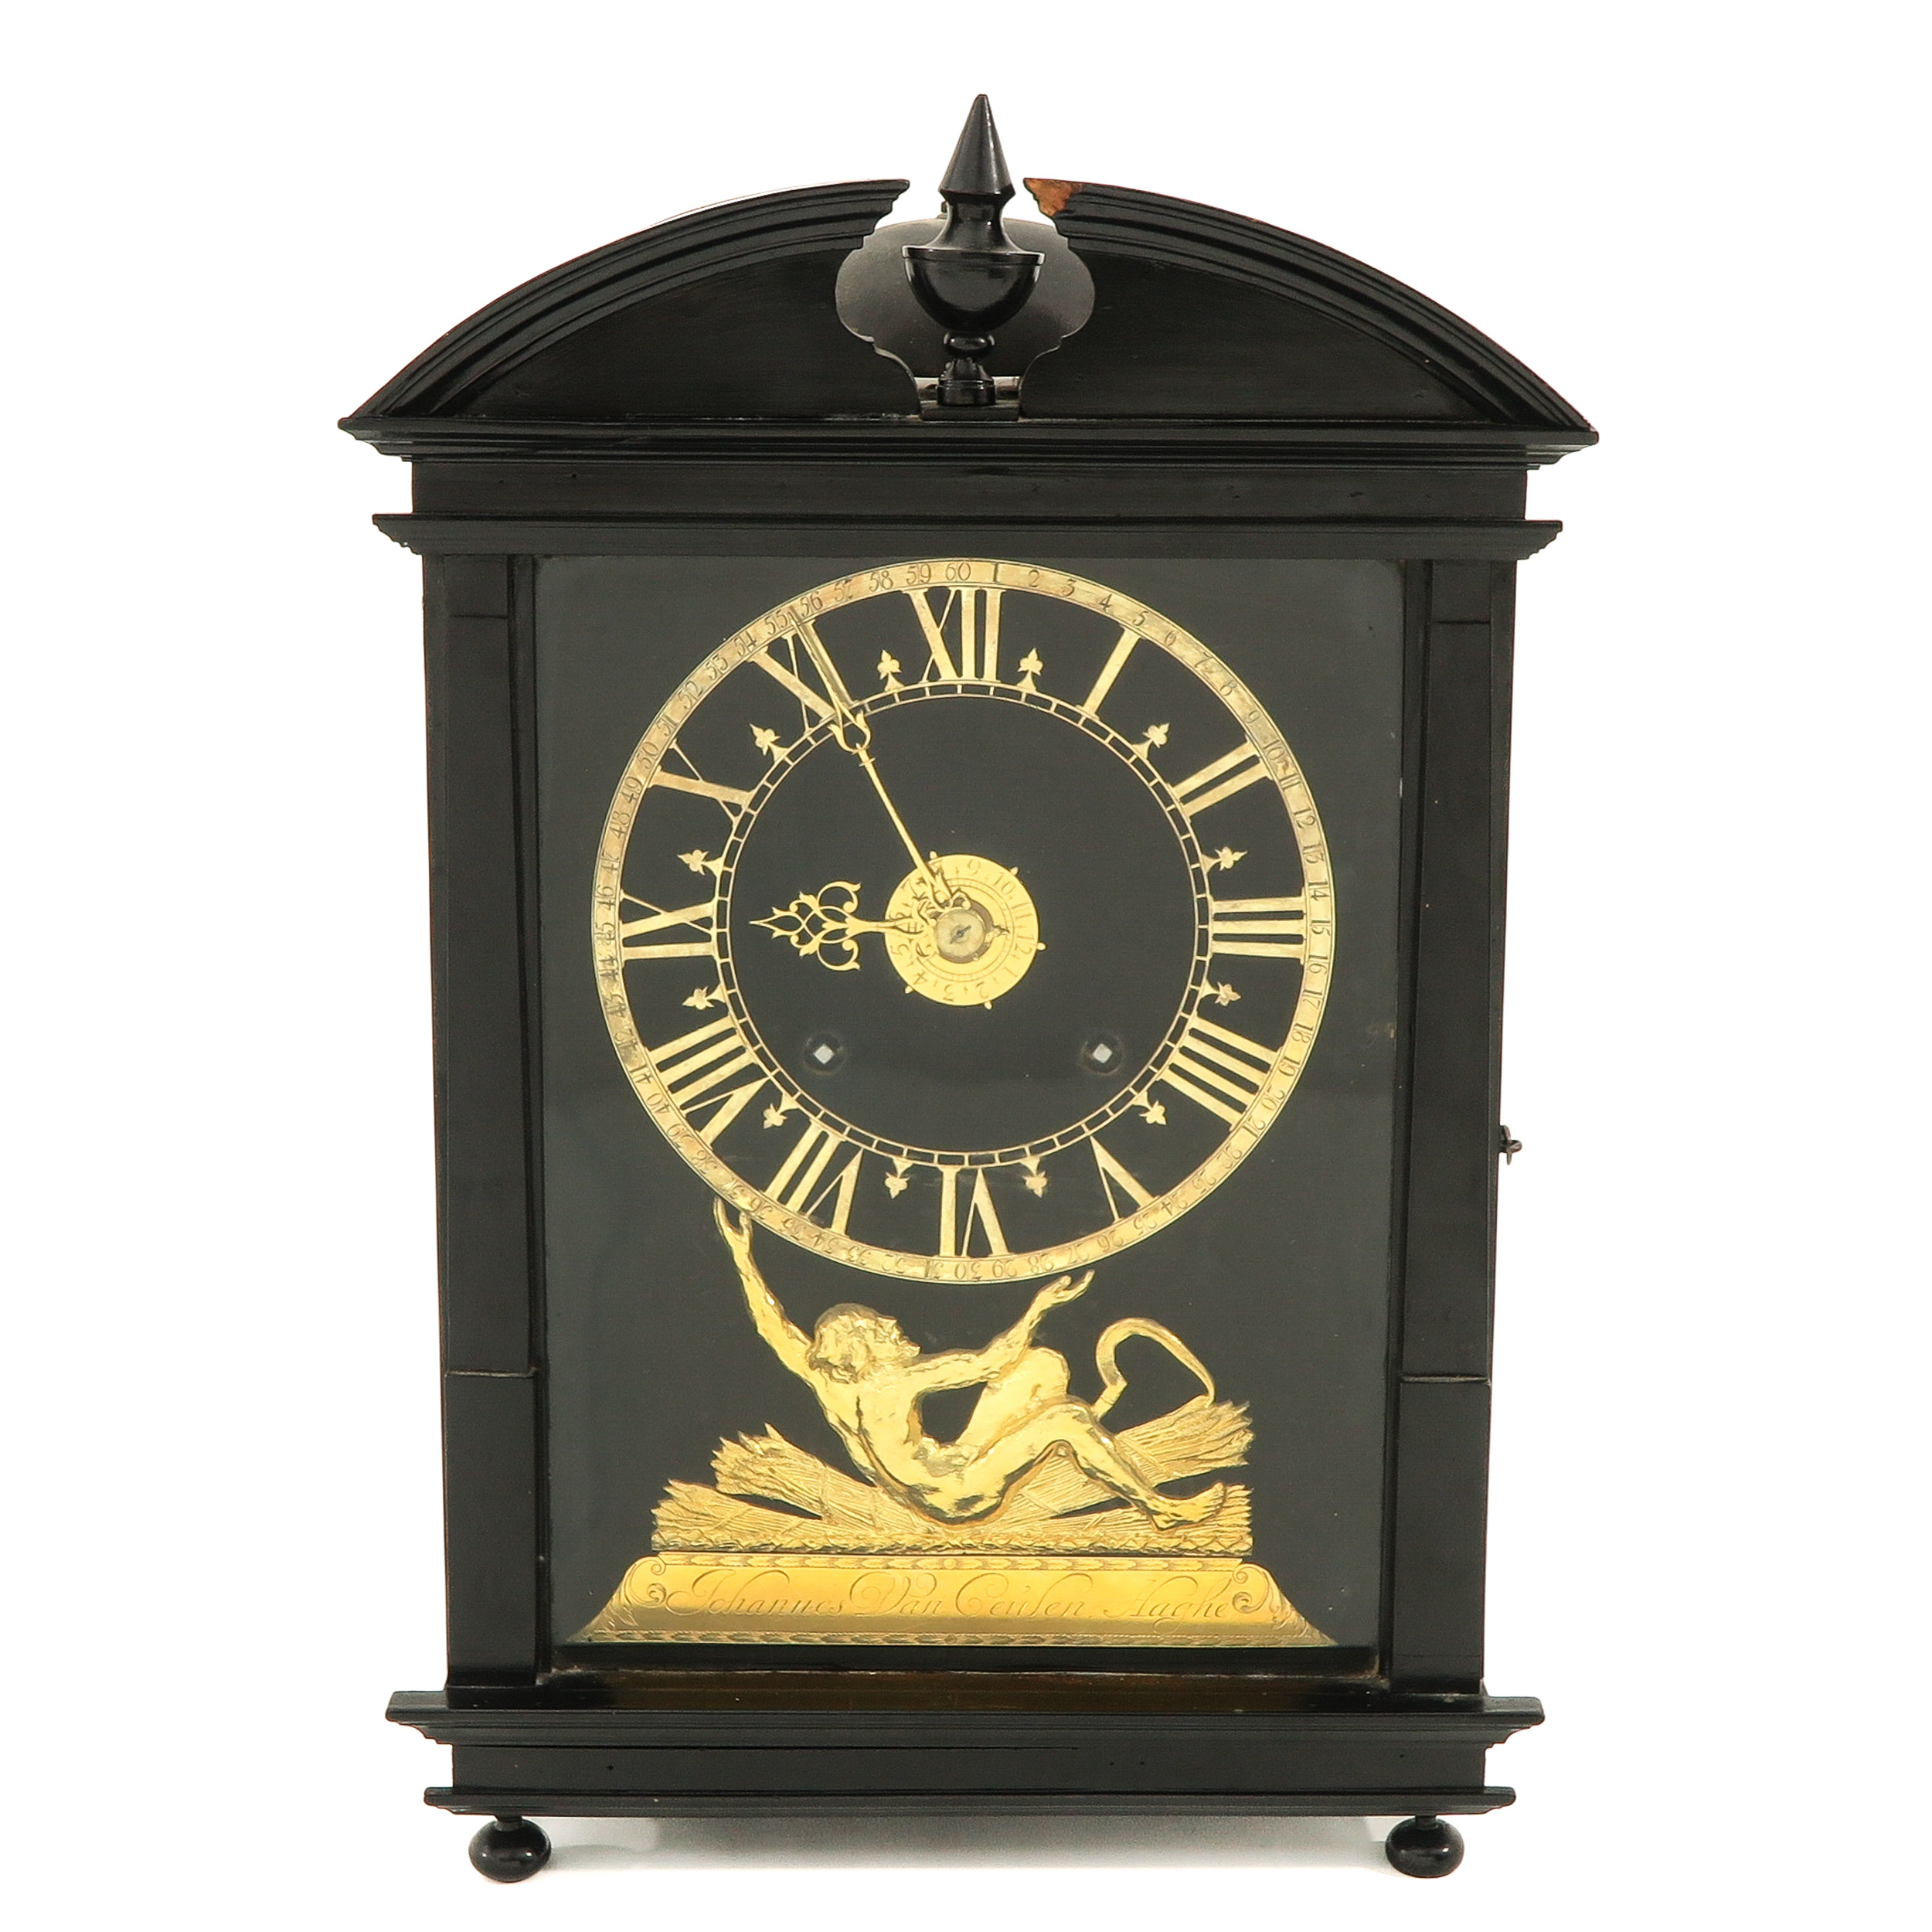 A Hague Clock or Haagsche Klok